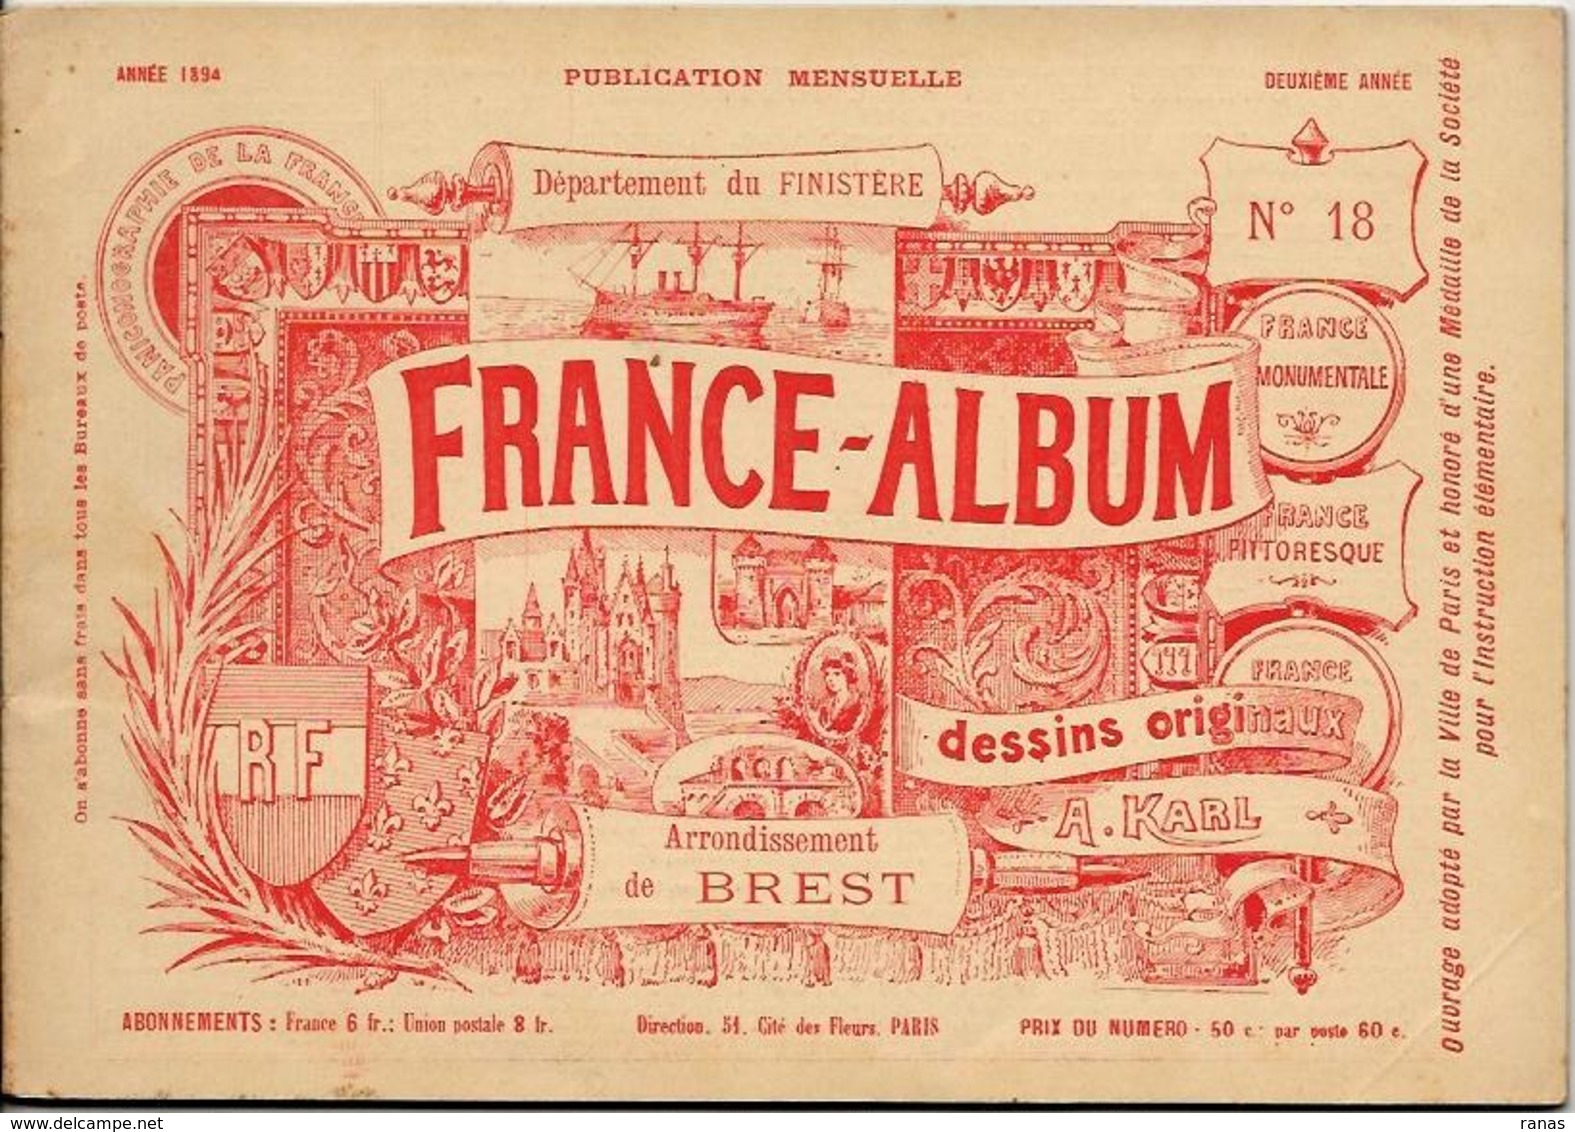 Finistère France Album De A. KARL, Carte Gravures Texte Publicités 1894 - Dépliants Touristiques